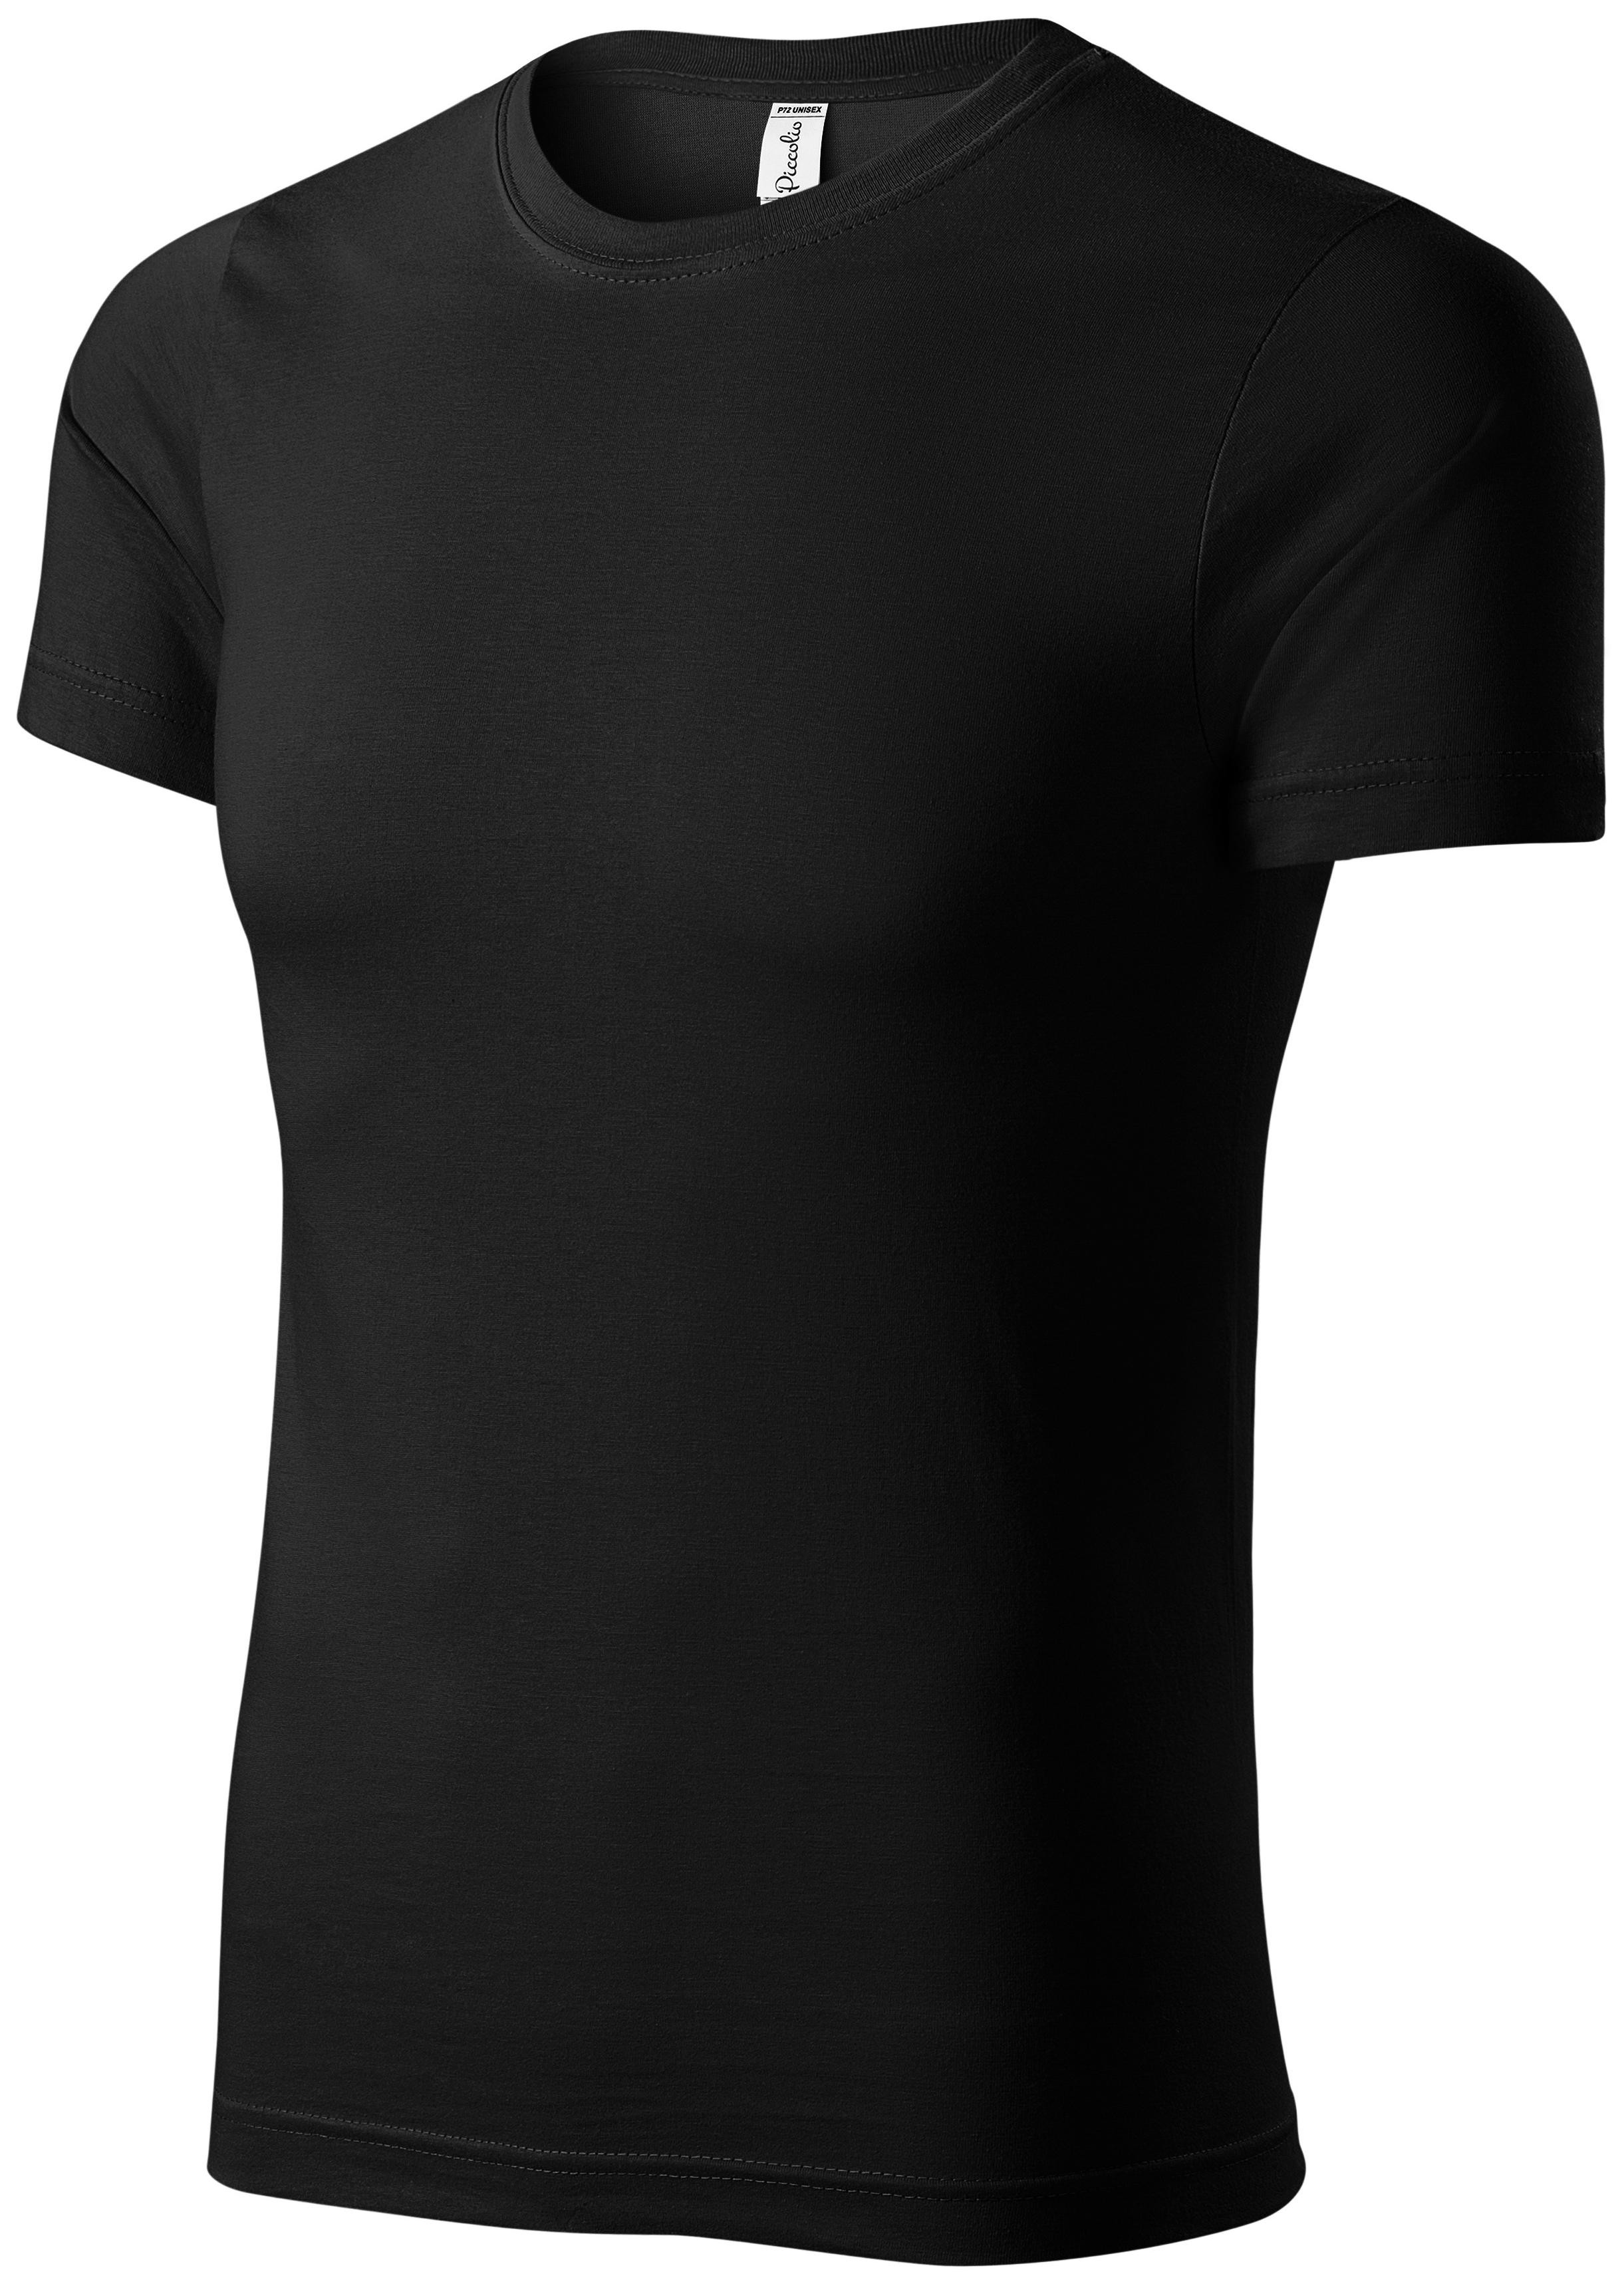 Detské ľahké tričko, čierna, 134cm / 8rokov